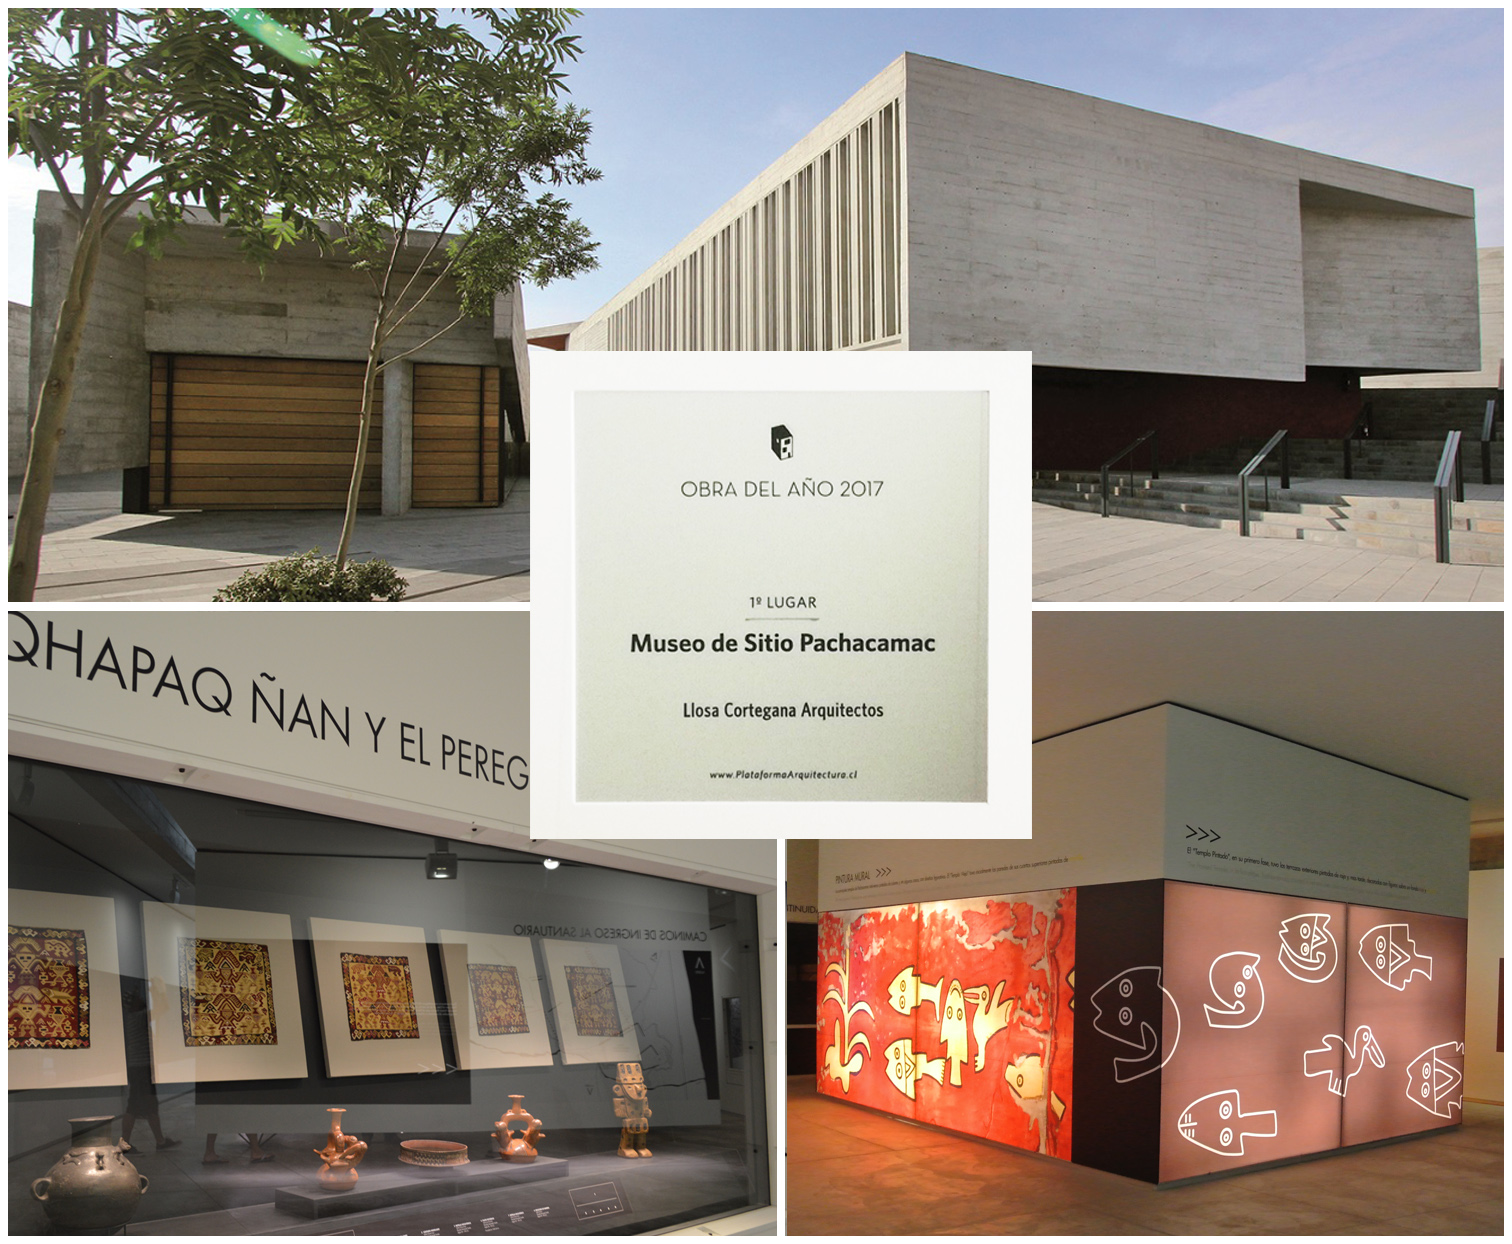 Museo de Sitio Pachacamac obtuvo el Premio Obra del Año ODA 2017